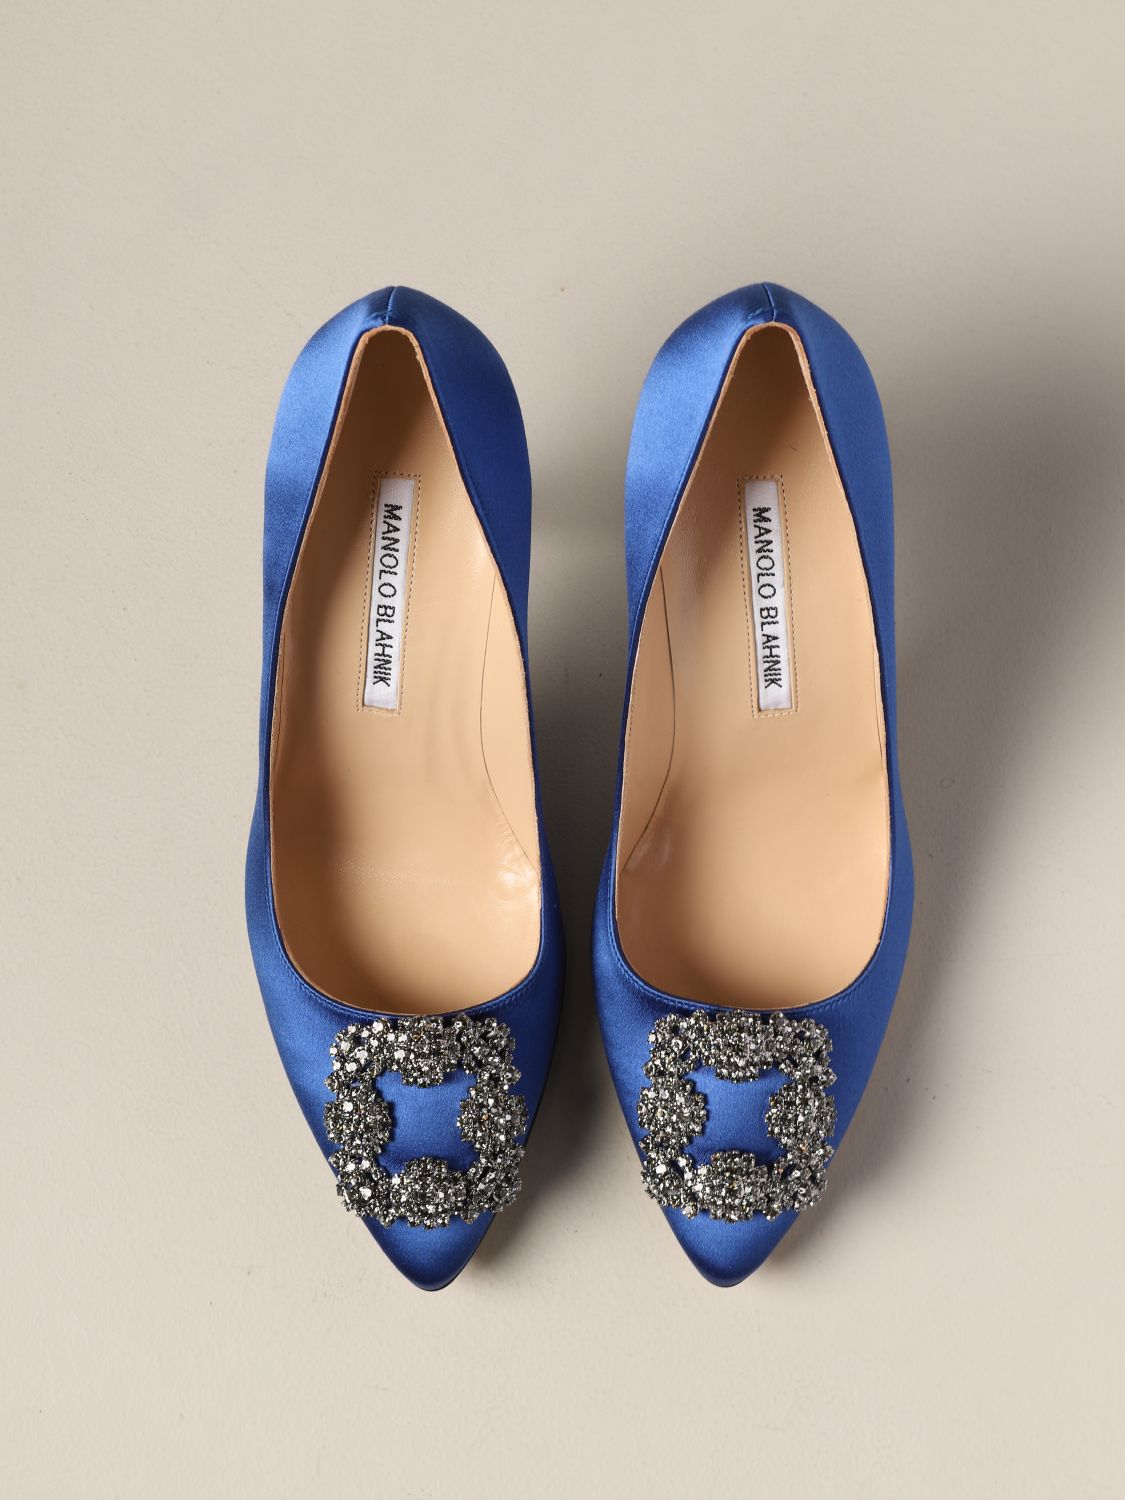 MANOLO BLAHNIK: Shoes women | Court Shoes Manolo Blahnik Women Royal ...